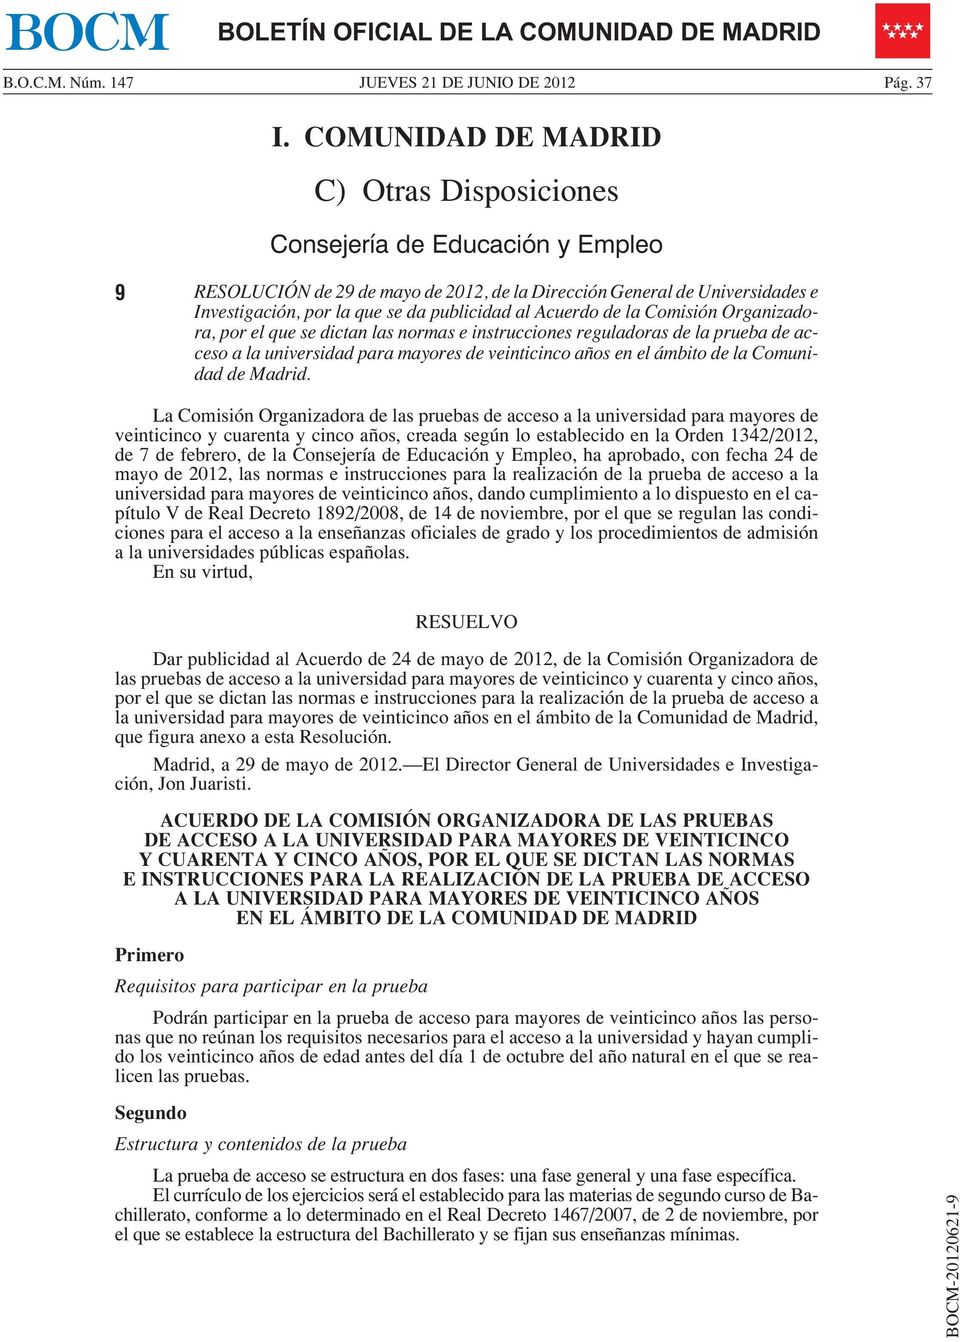 al Acuerdo de la Comisión Organizadora, por el que se dictan las normas e instrucciones reguladoras de la prueba de acceso a la universidad para mayores de veinticinco años en el ámbito de la